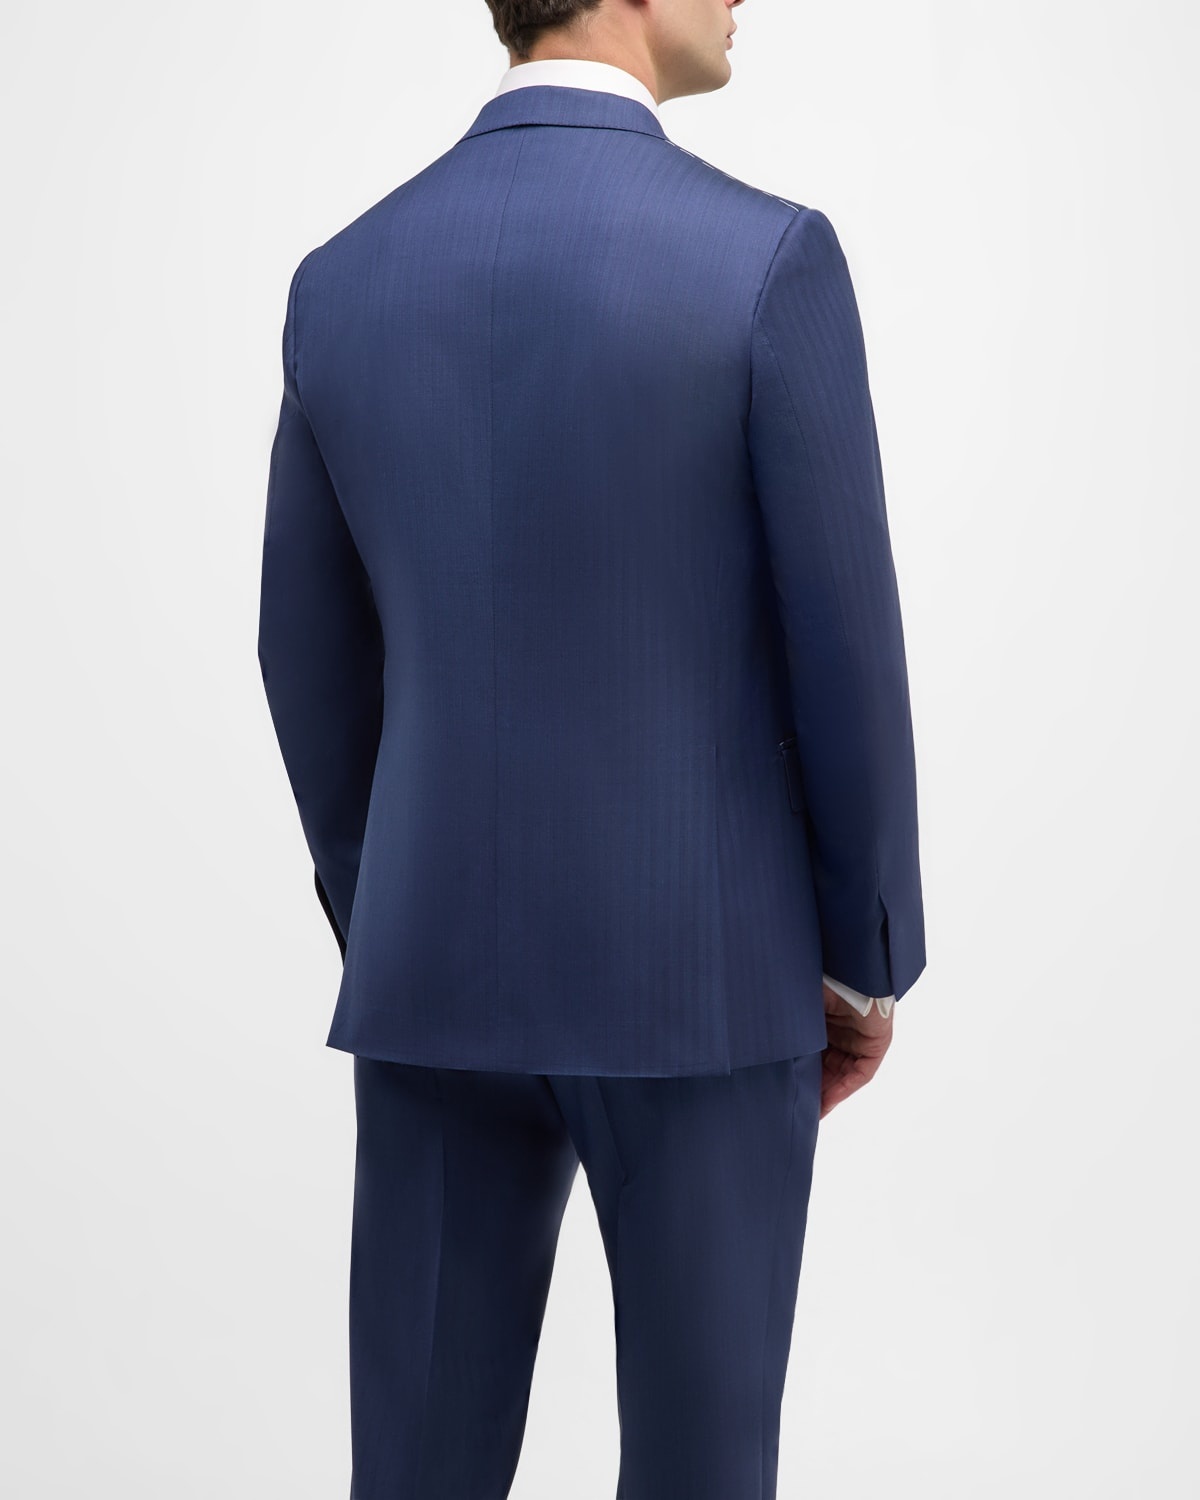 Men's Wool Herringbone Suit - 5